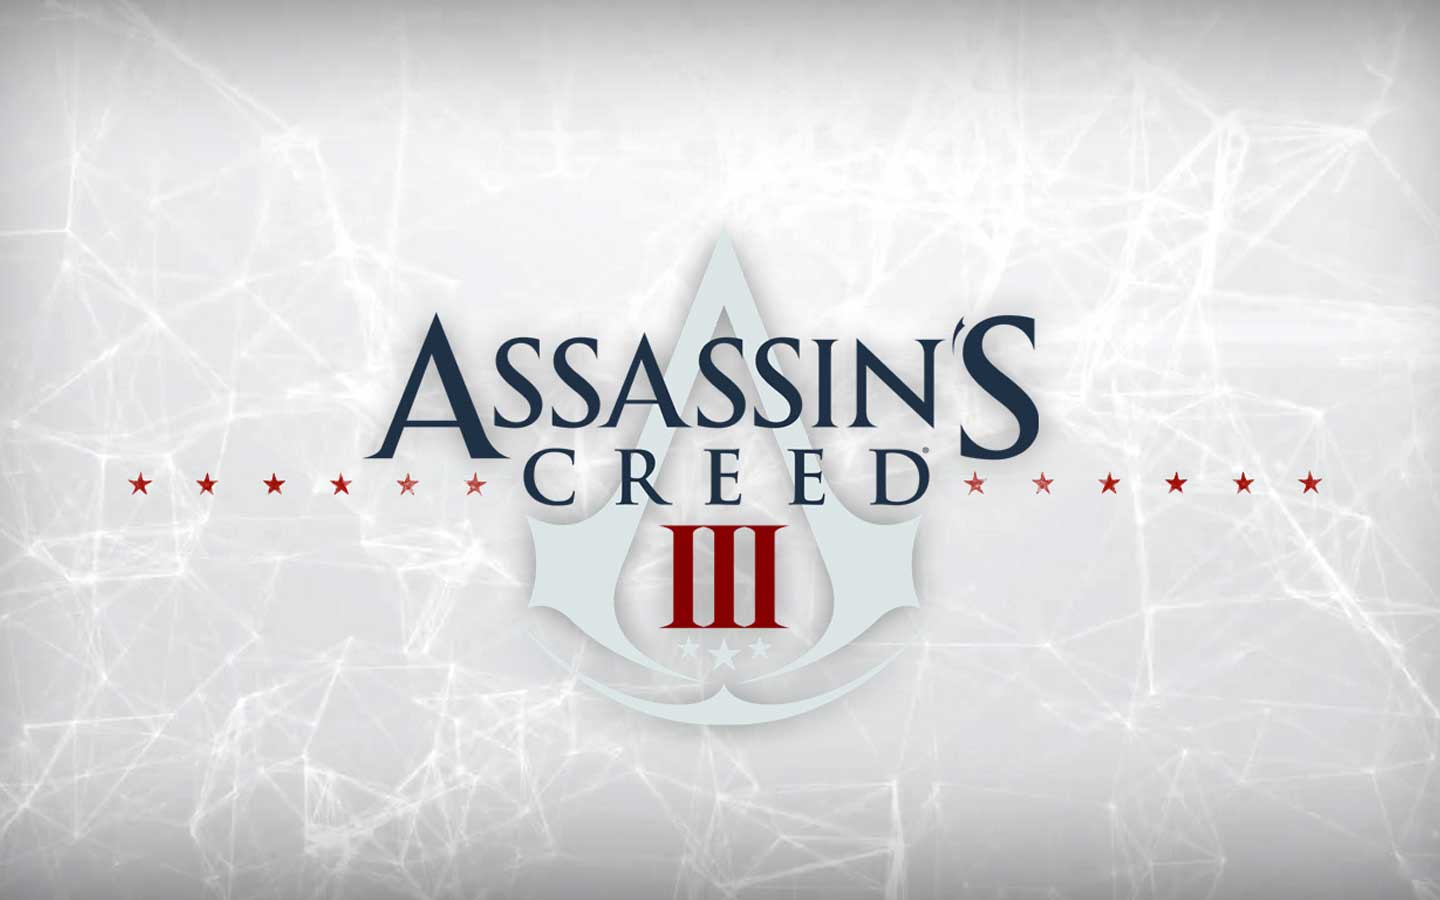 Assassins Creed 3 - The Assassins Wallpaper 31818693 - Fanpop